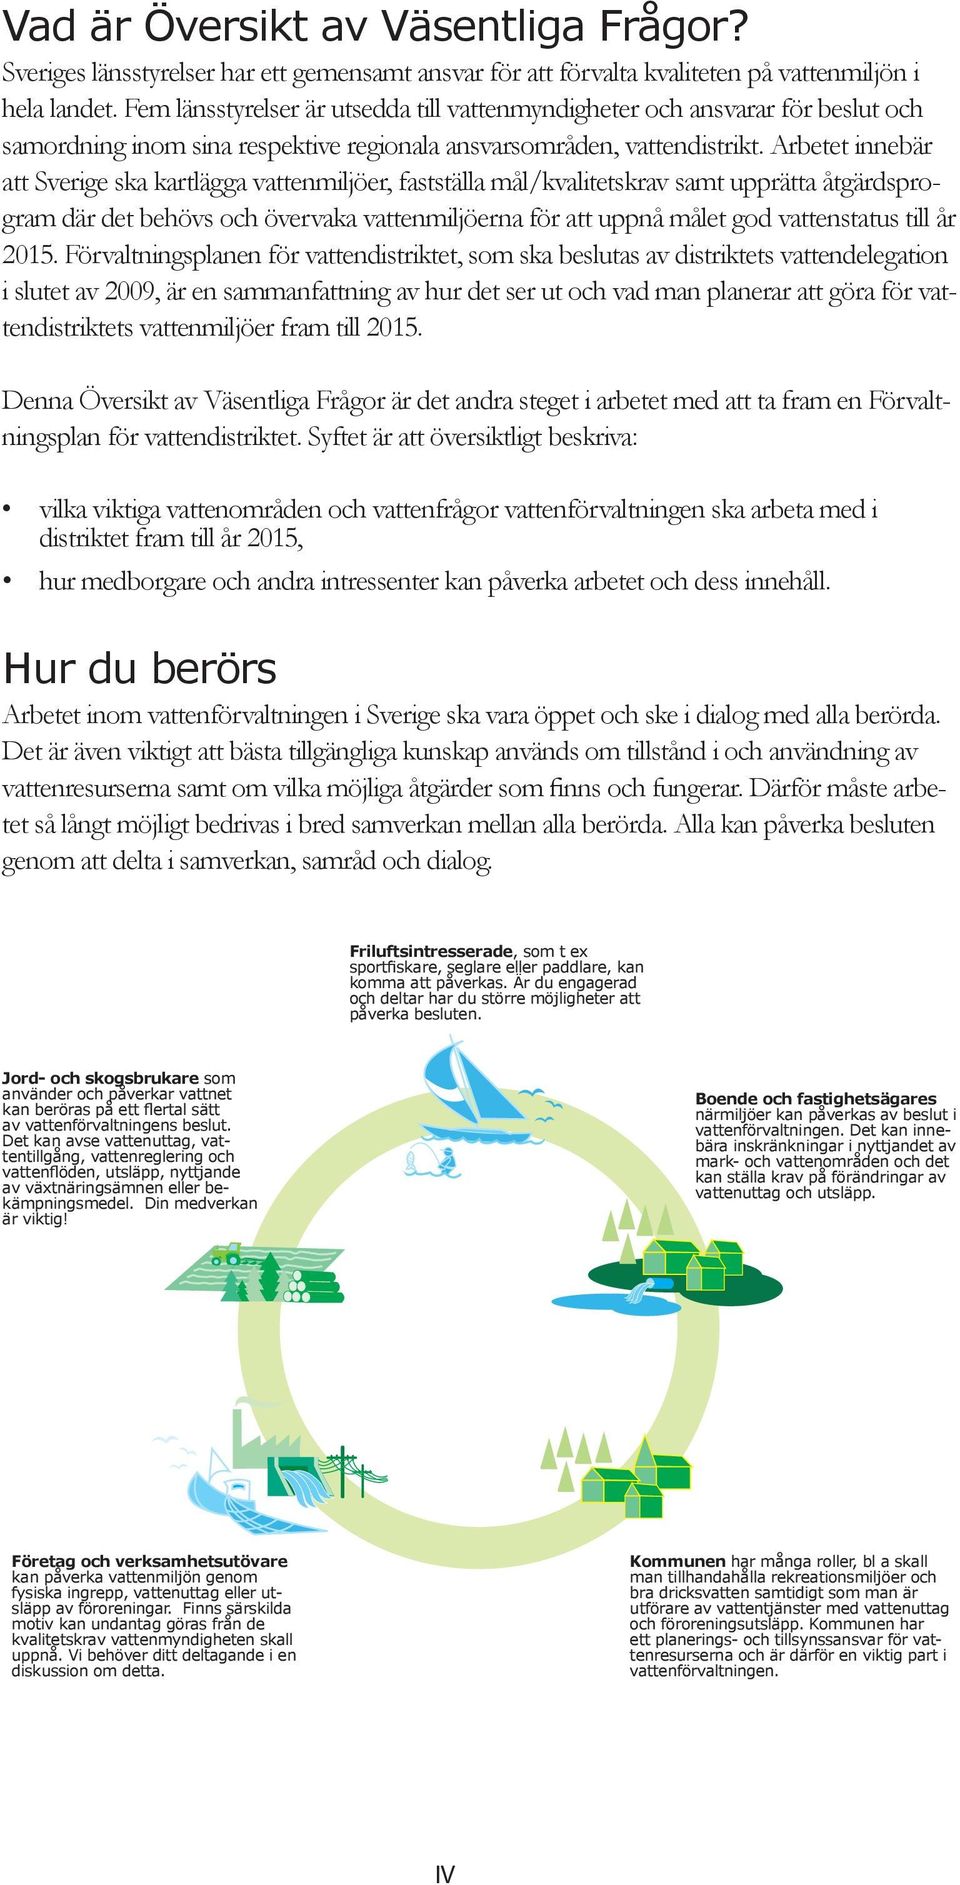 Arbetet innebär att Sverige ska kartlägga vattenmiljöer, fastställa mål/kvalitetskrav samt upprätta åtgärdsprogram där det behövs och övervaka vattenmiljöerna för att uppnå målet god vattenstatus